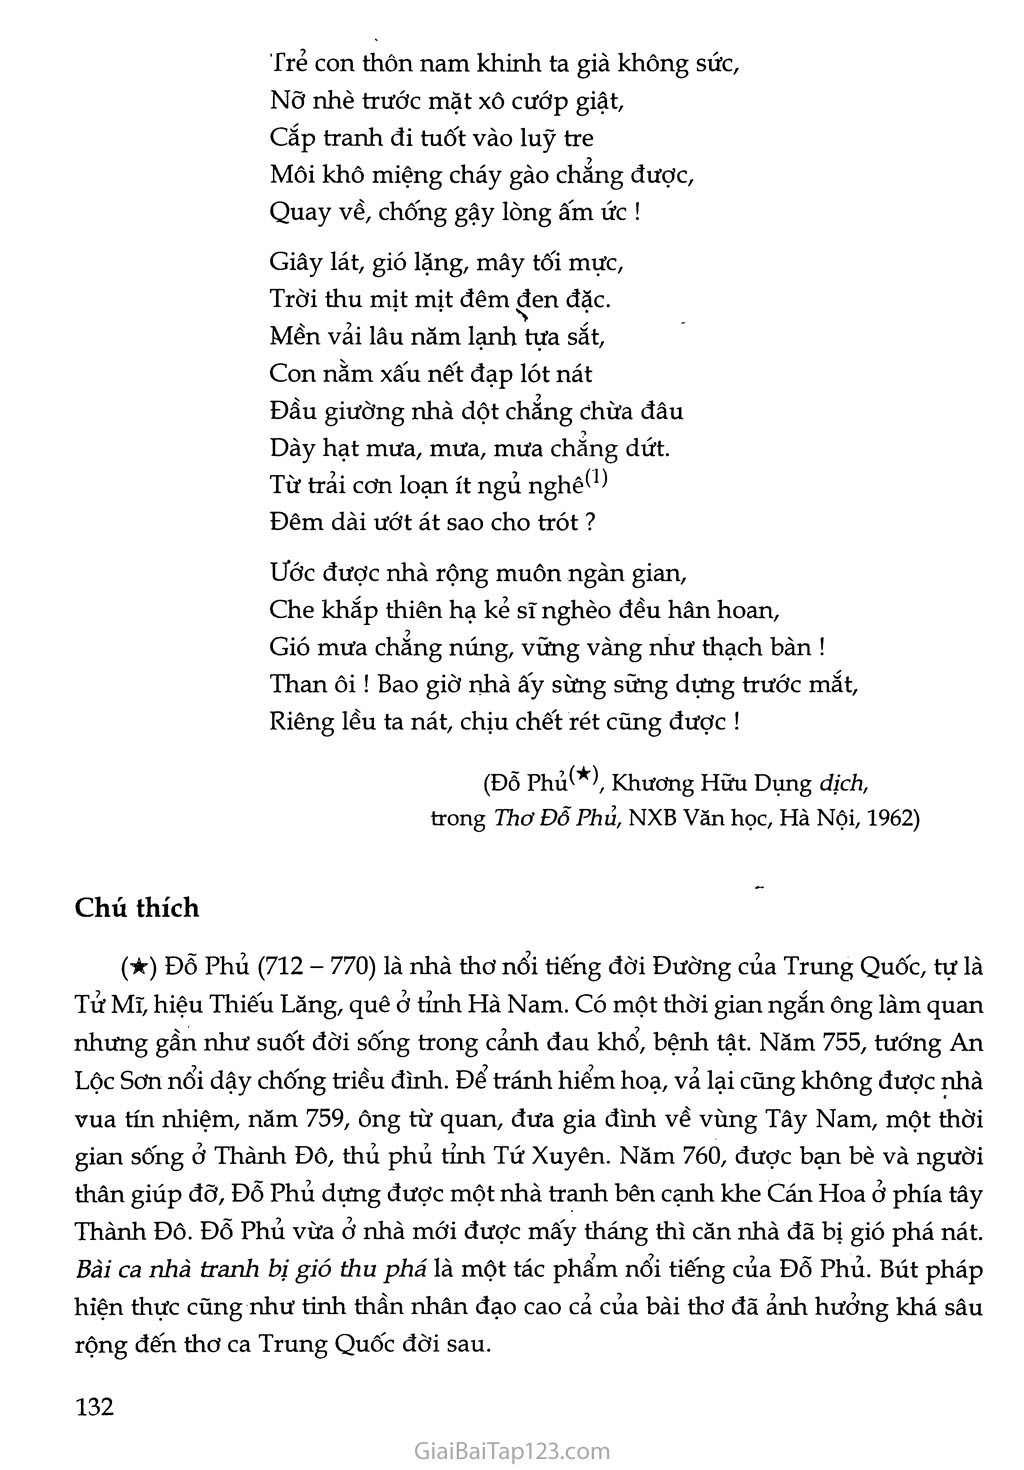 Bài ca nhà tranh bị gió thu phá (Mao ốc vị thu phong sở phá ca) trang 2